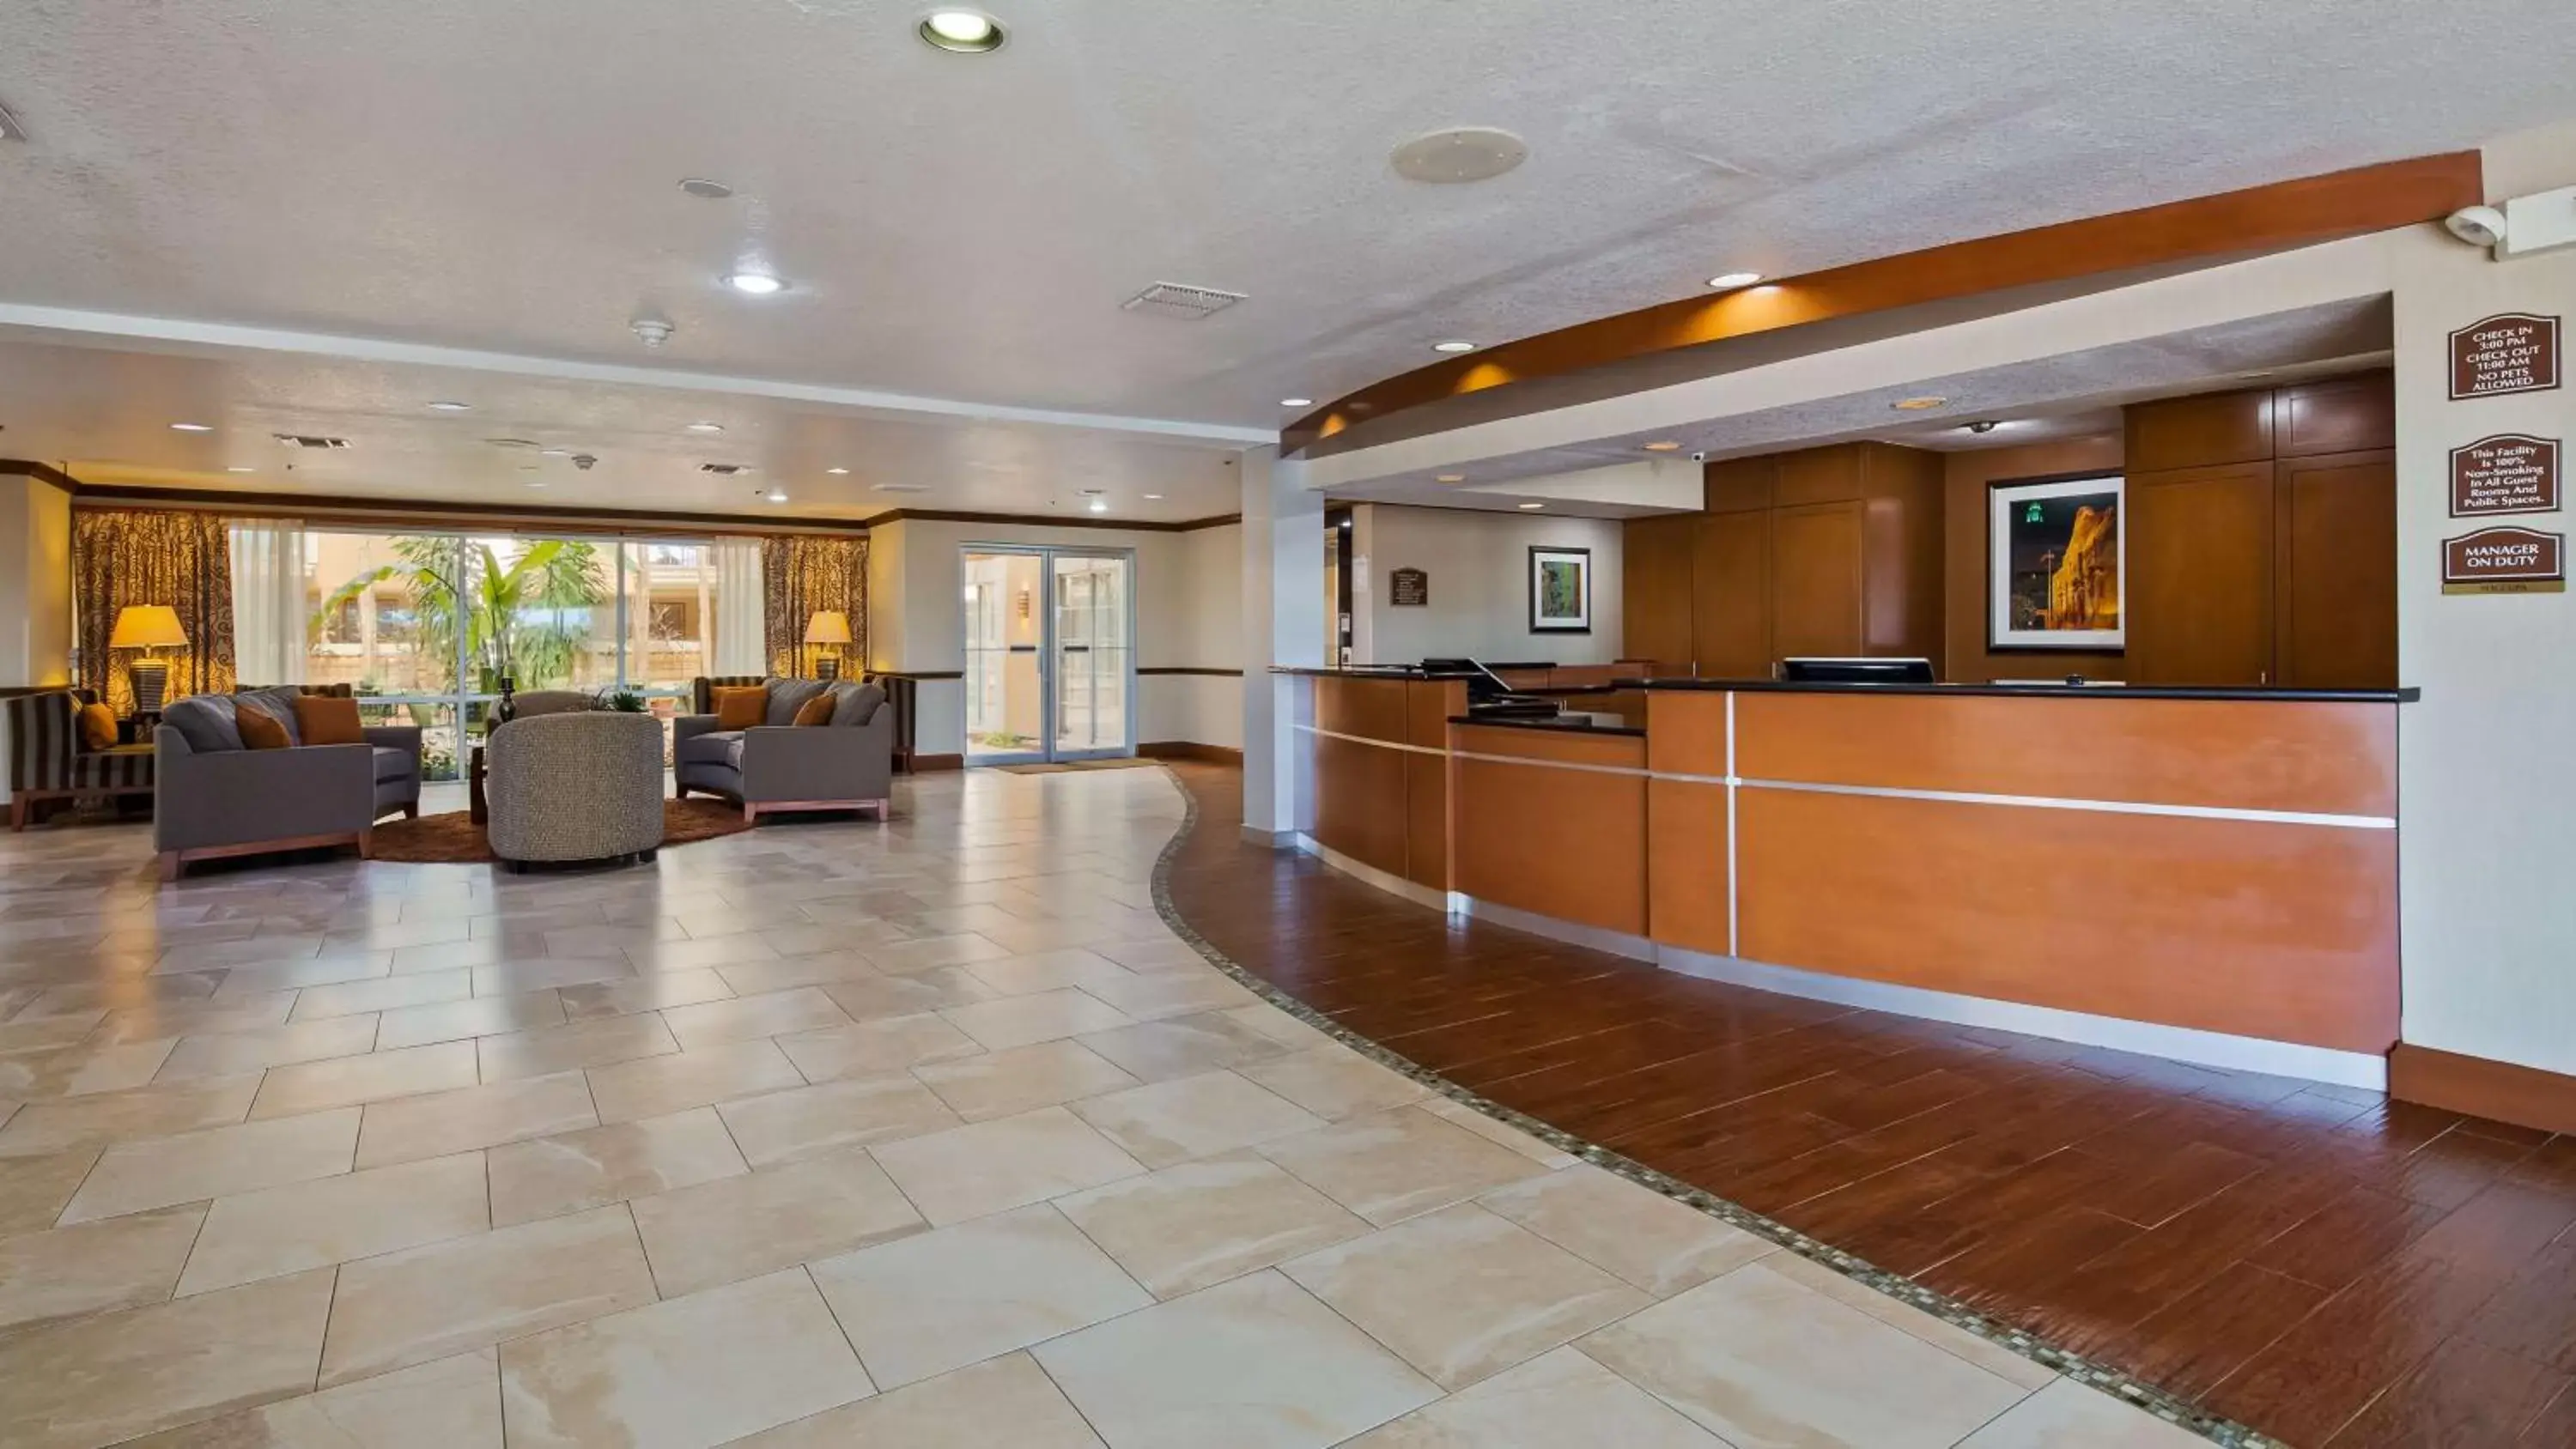 Lobby or reception, Lobby/Reception in Best Western Plus Atrium Inn